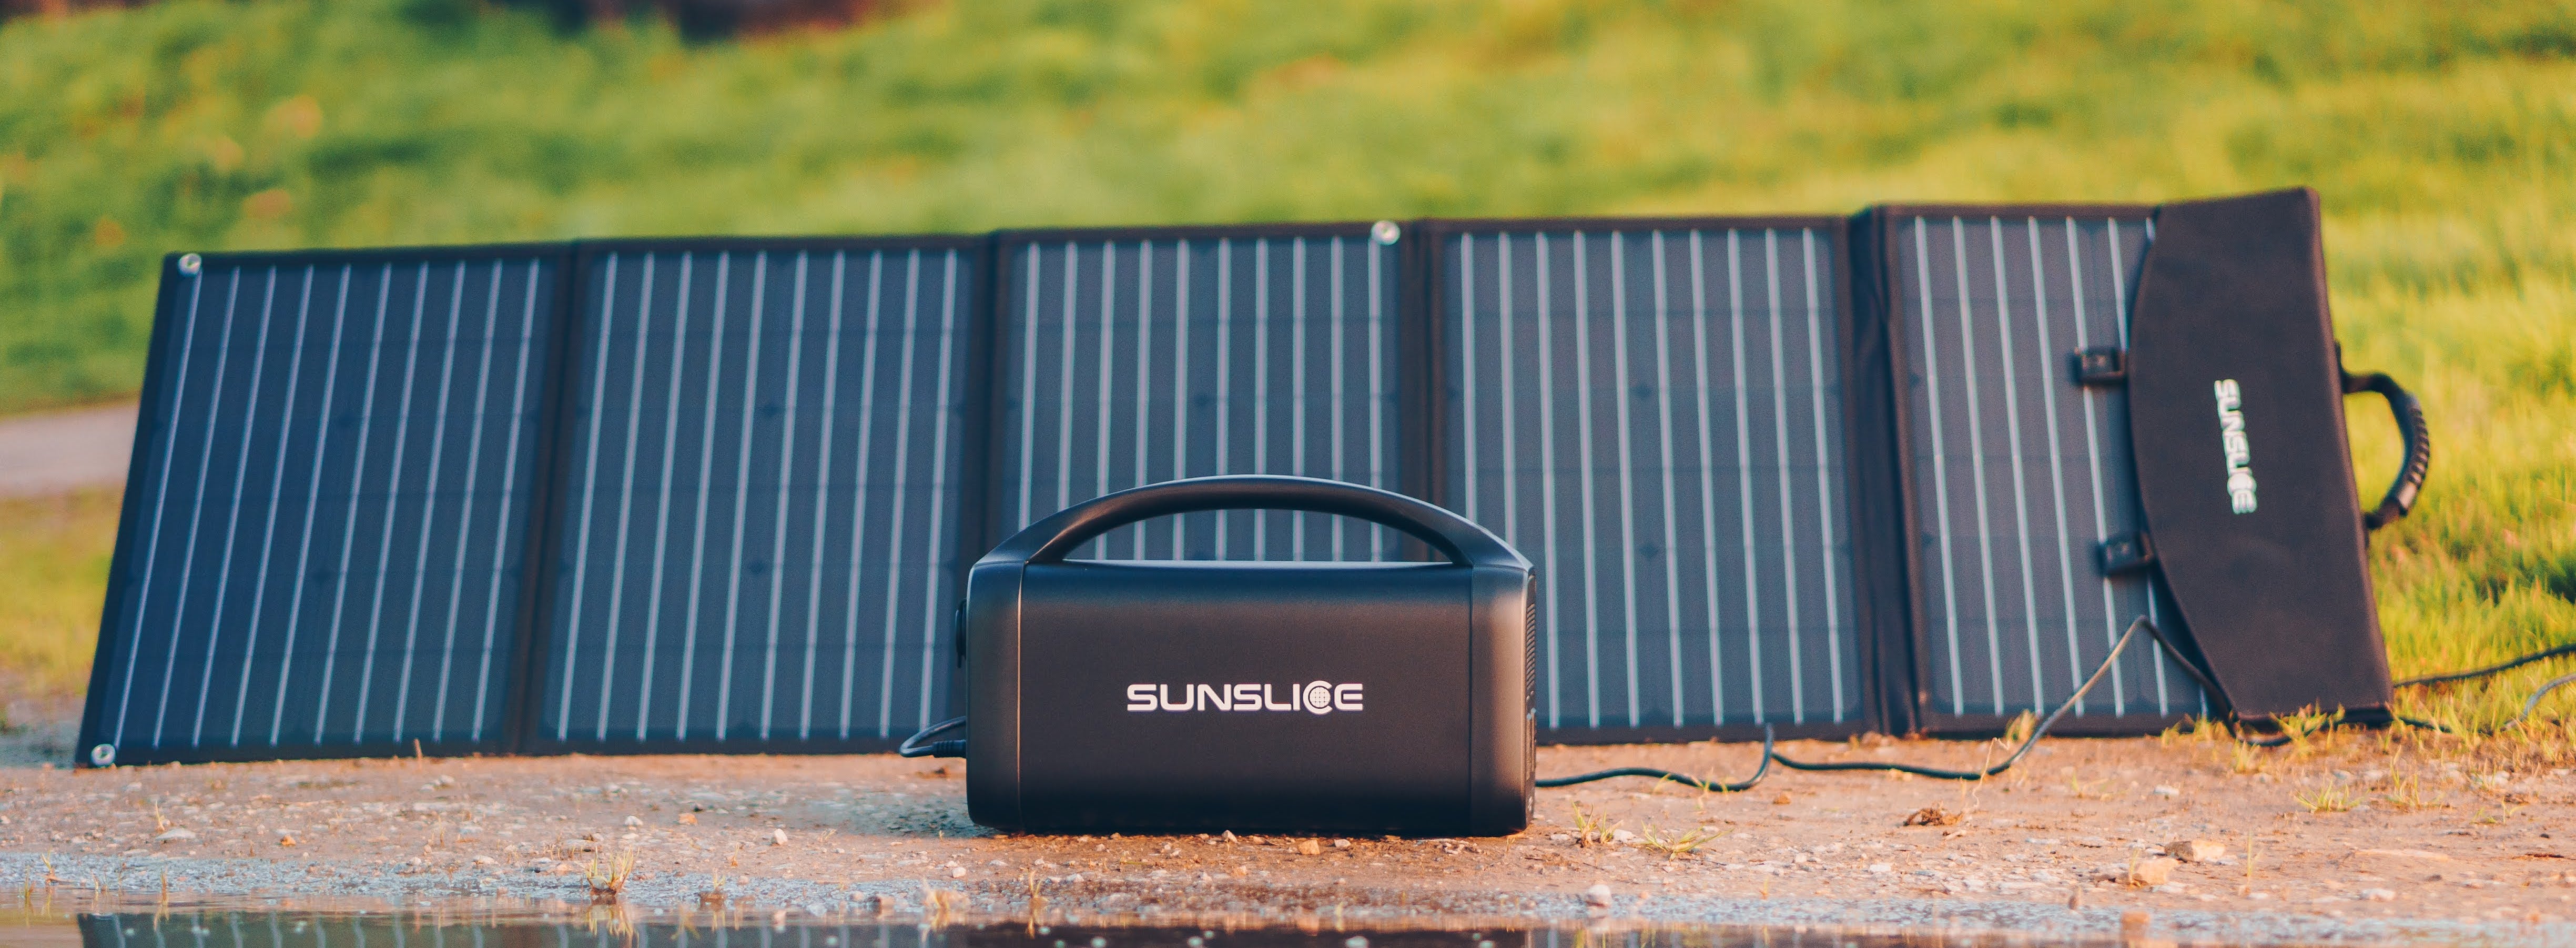 sunslice générateur connecté à un USB solaire placé sur le sol avec un fond vert